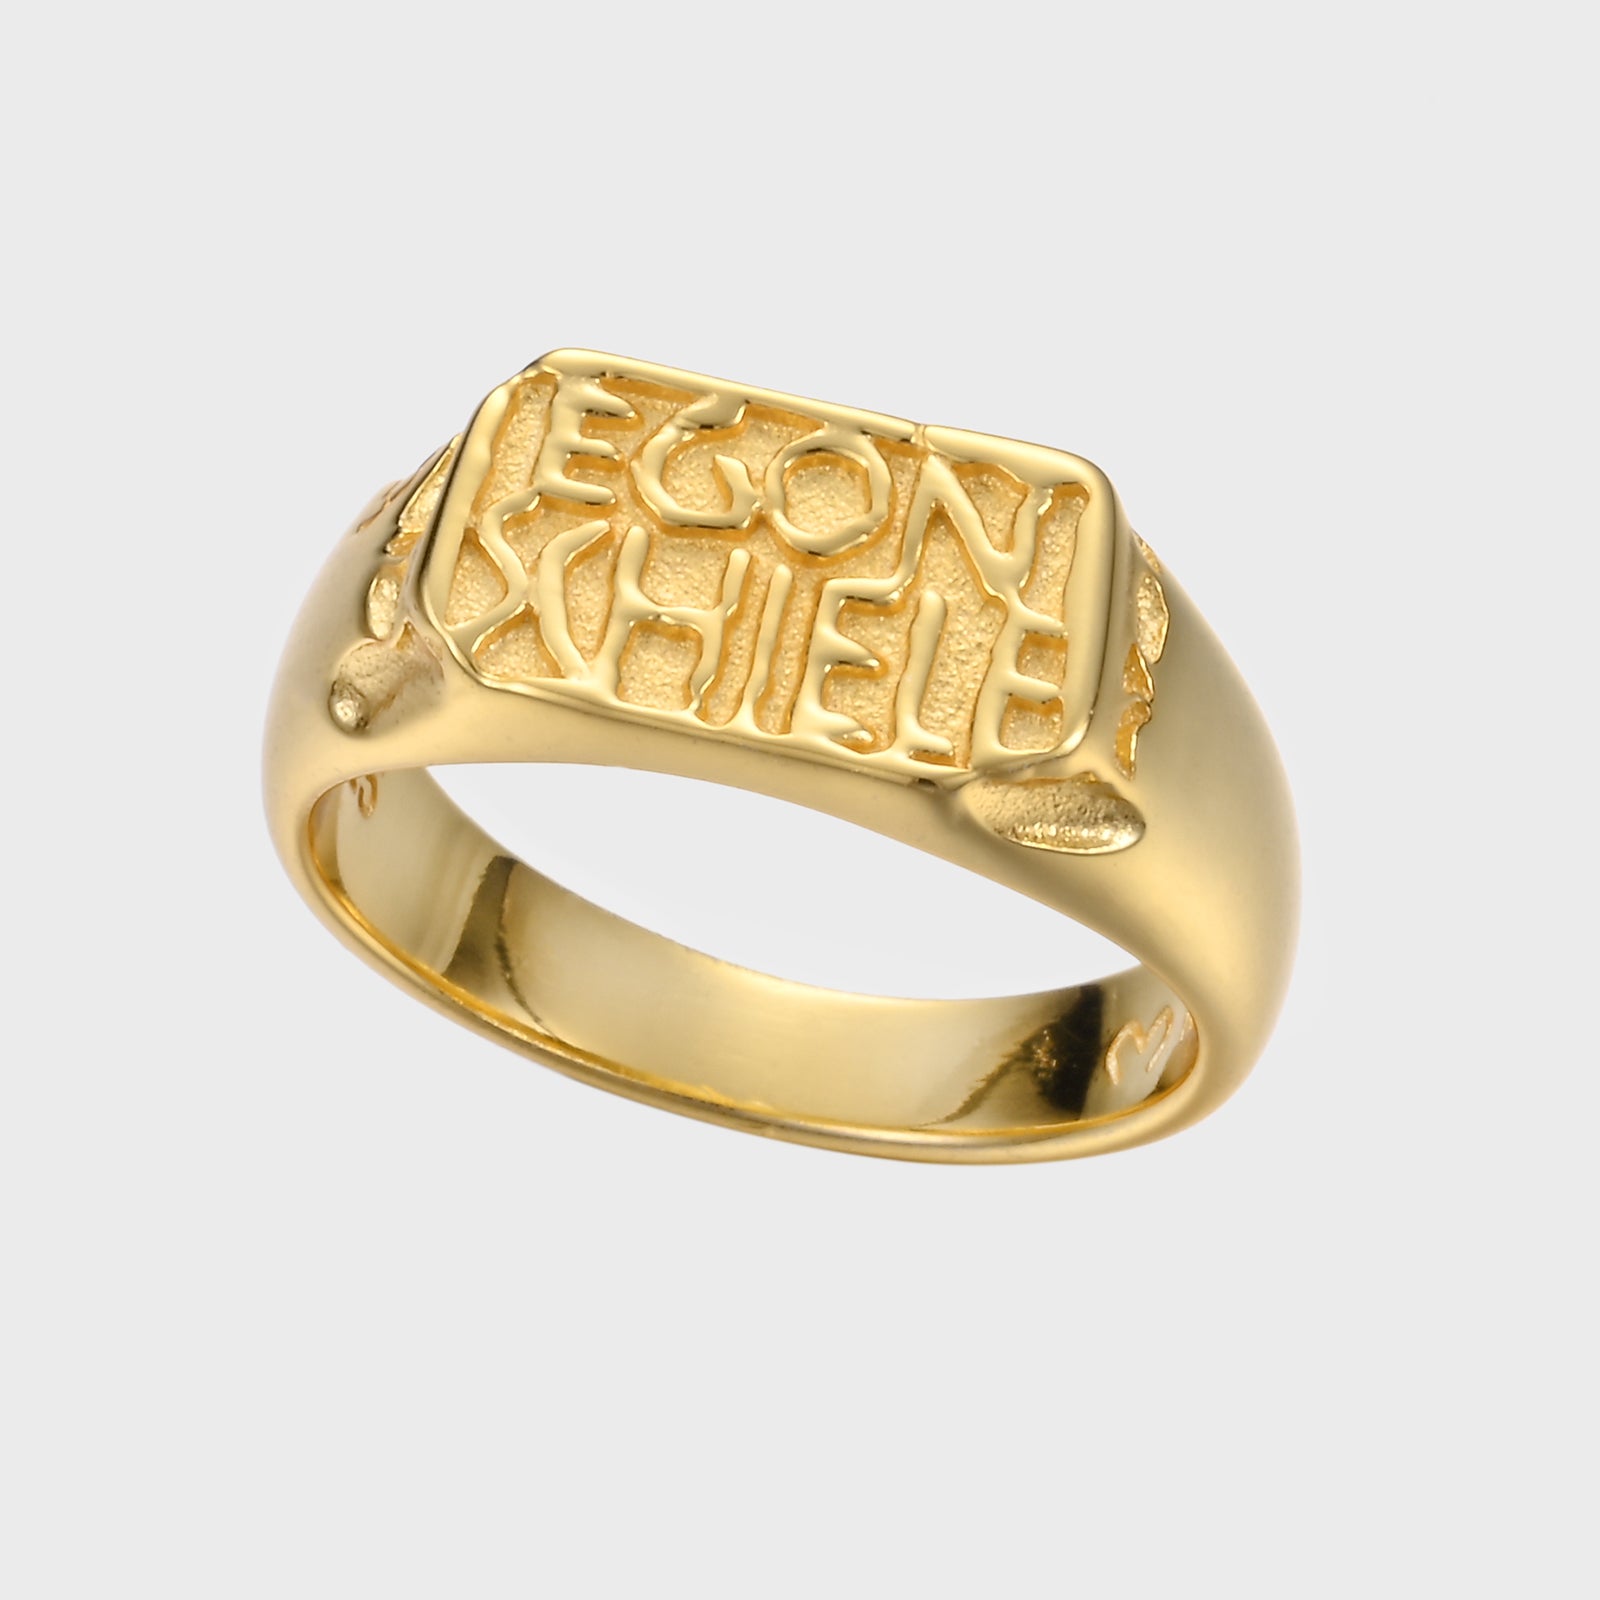 Schiele's signature - Gold Ring